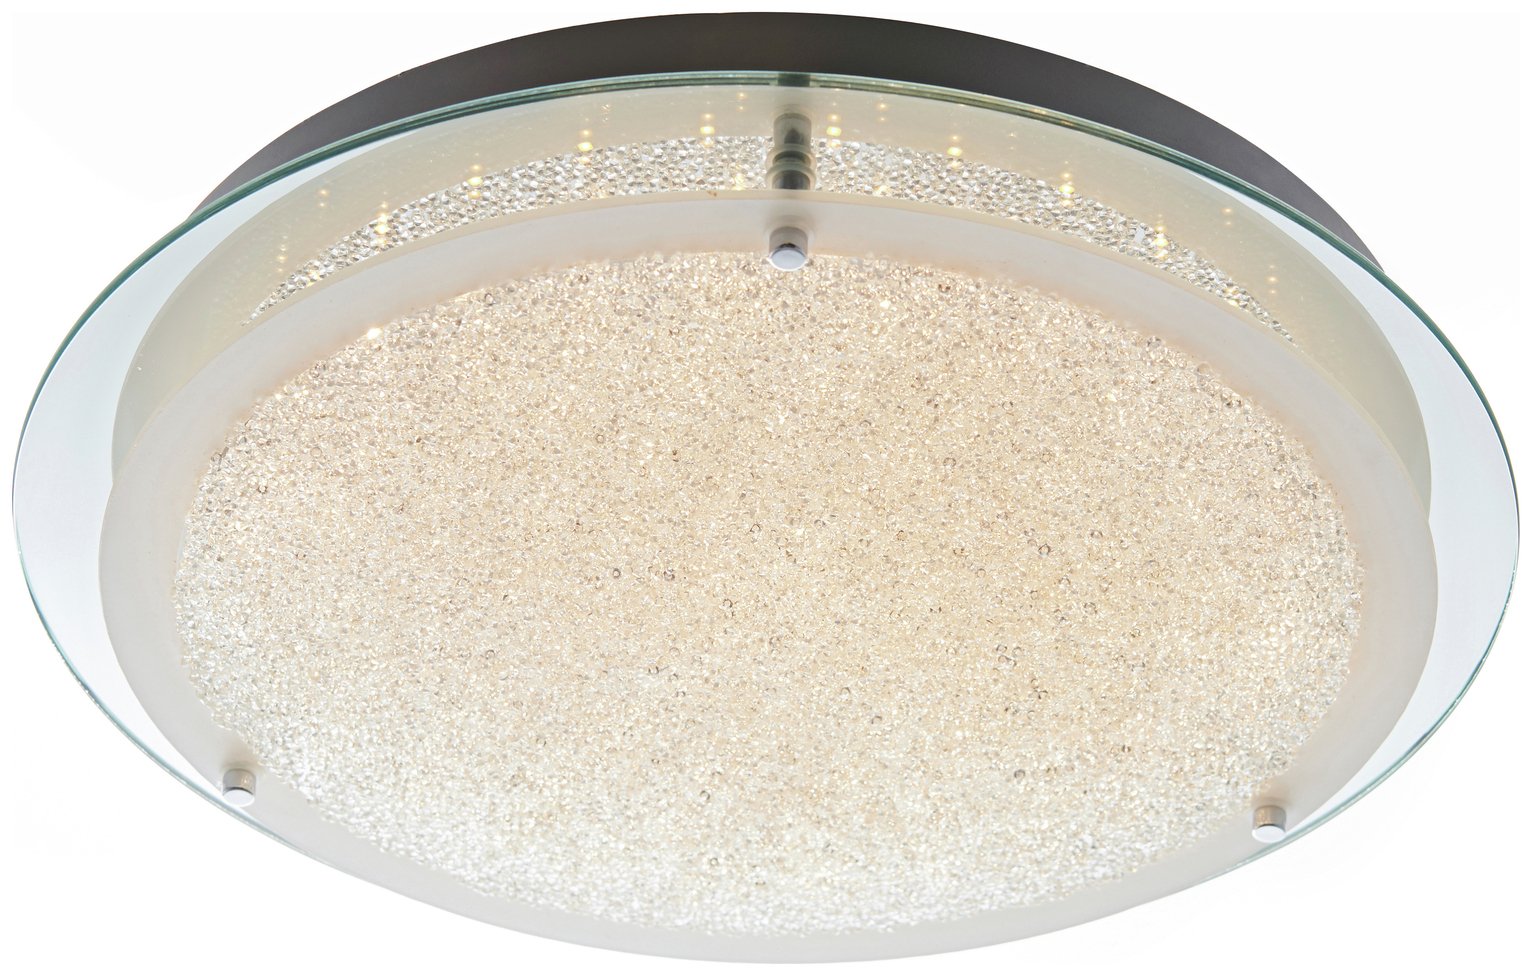 Argos Home Esmo Beaded Glass Flush Ceiling Light review